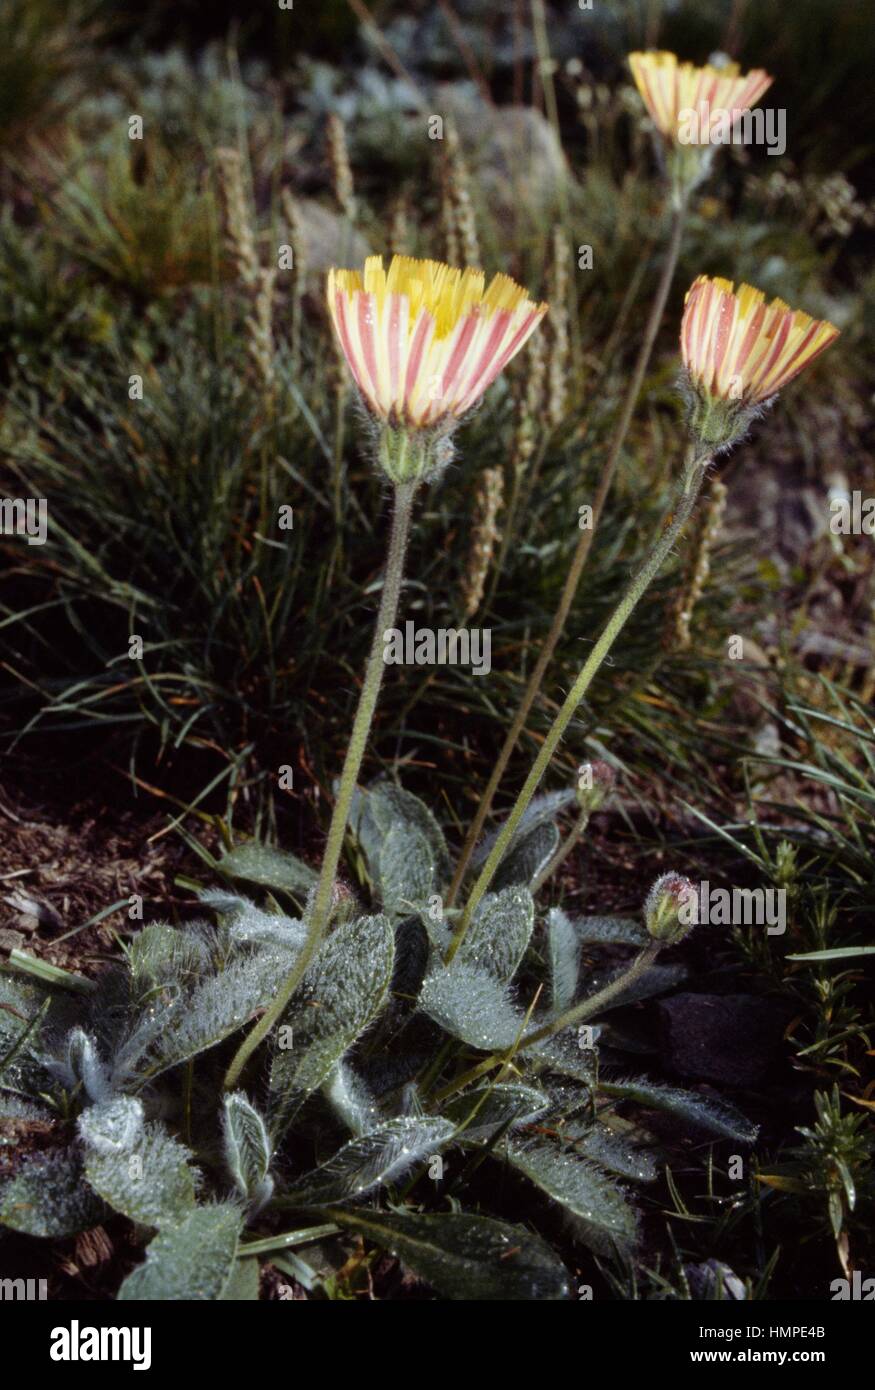 Senecio aurantiacus or Tephroseris integrifolia aurantiaca, Asteraceae. Stock Photo